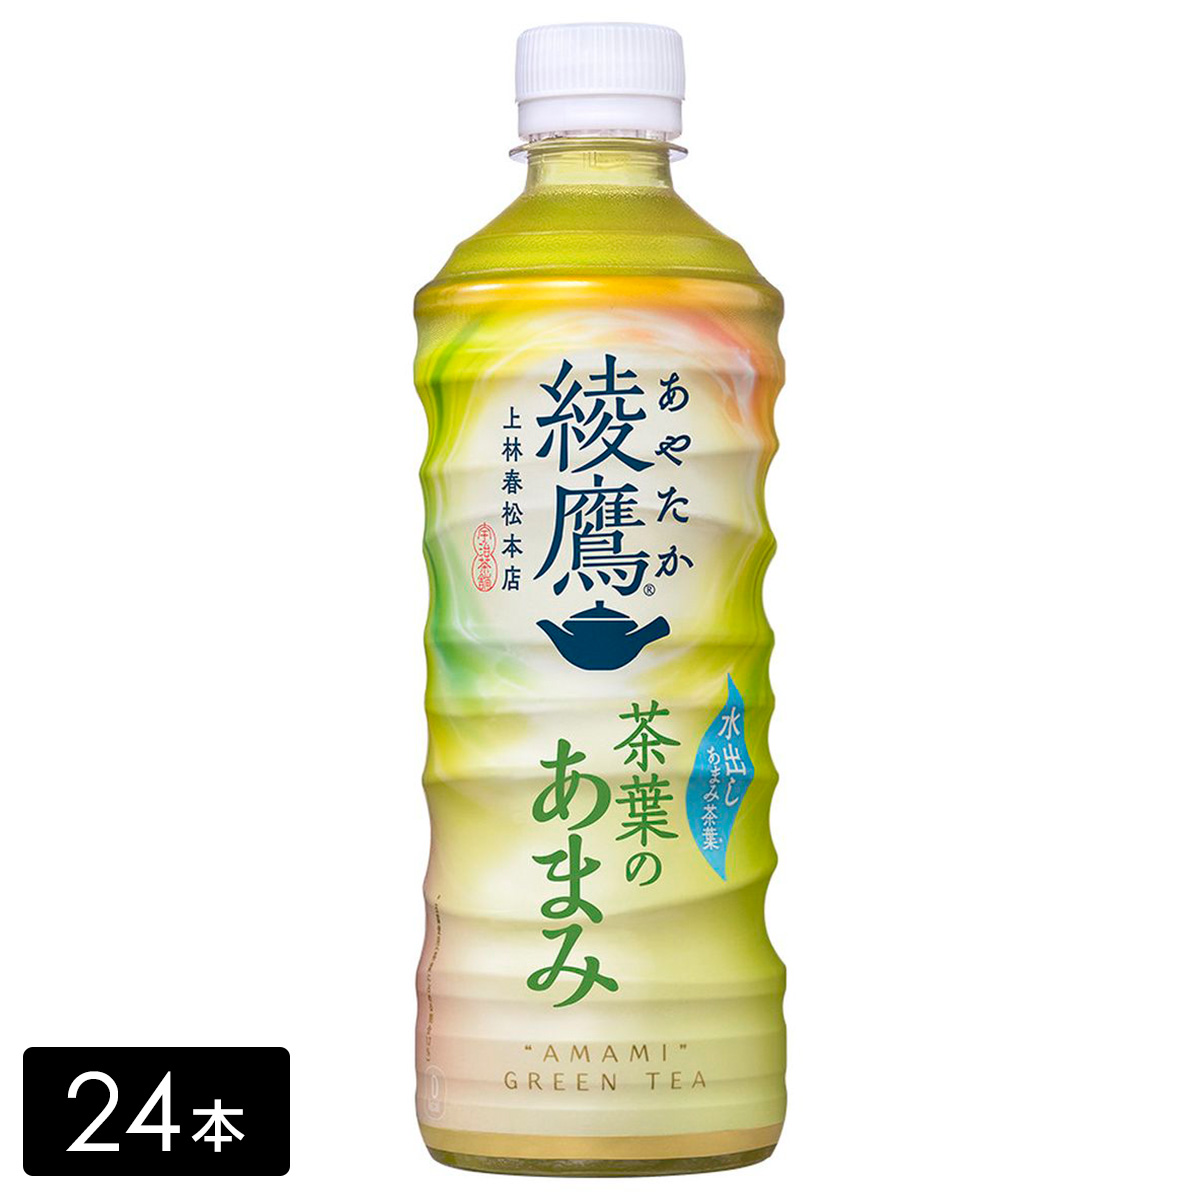 綾鷹 緑茶 茶葉のあまみ 525mL×24本(1箱) お茶 ペットボトル ケース売り